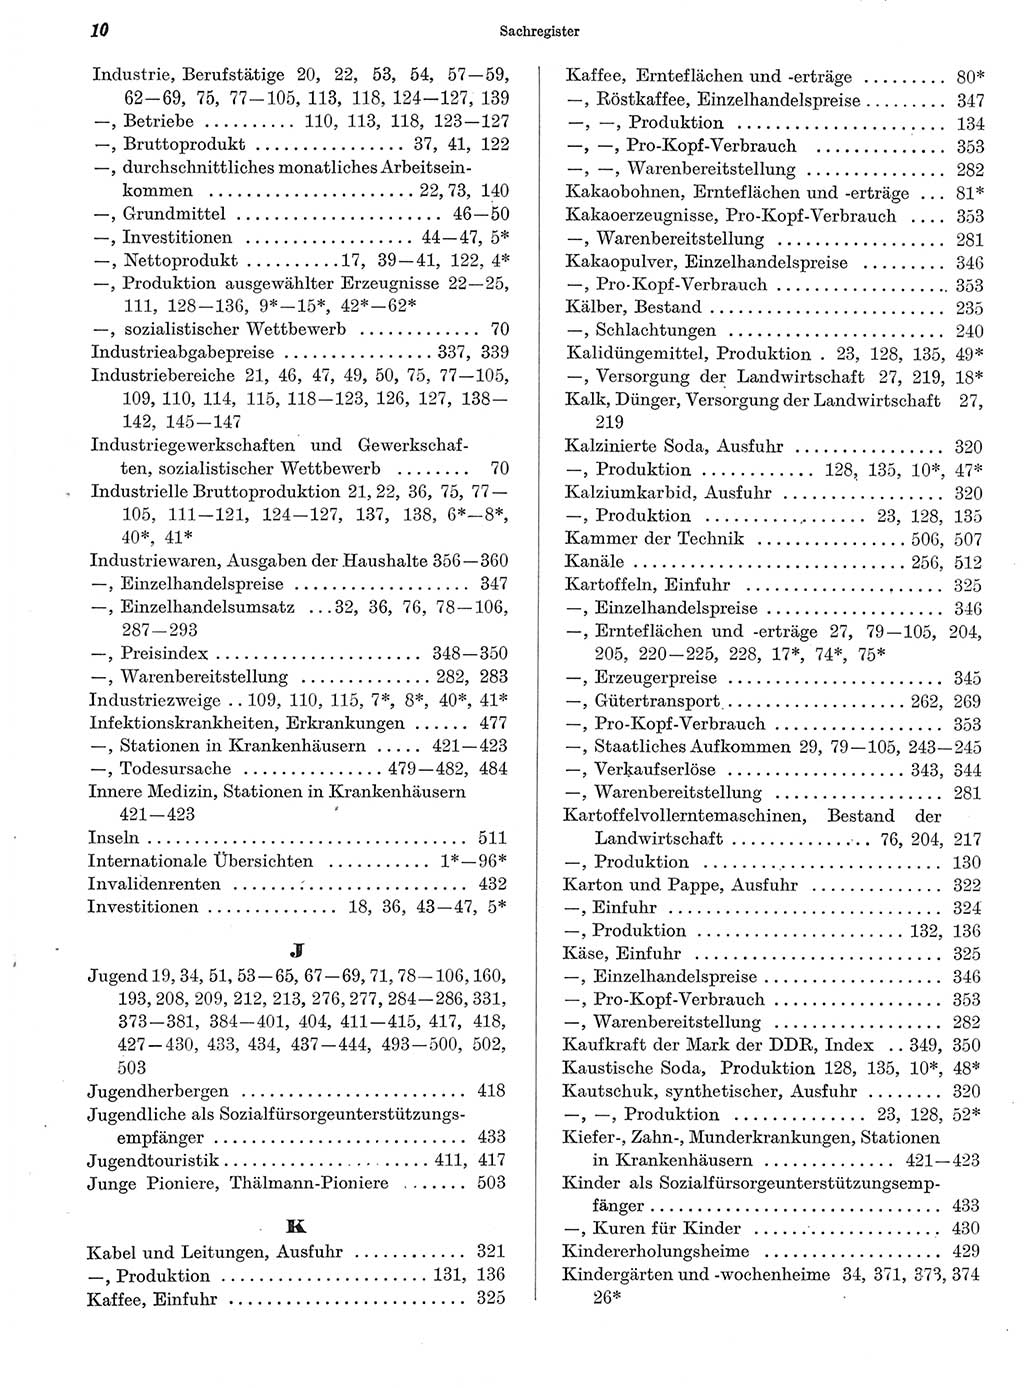 Statistisches Jahrbuch der Deutschen Demokratischen Republik (DDR) 1972, Seite 10 (Stat. Jb. DDR 1972, S. 10)